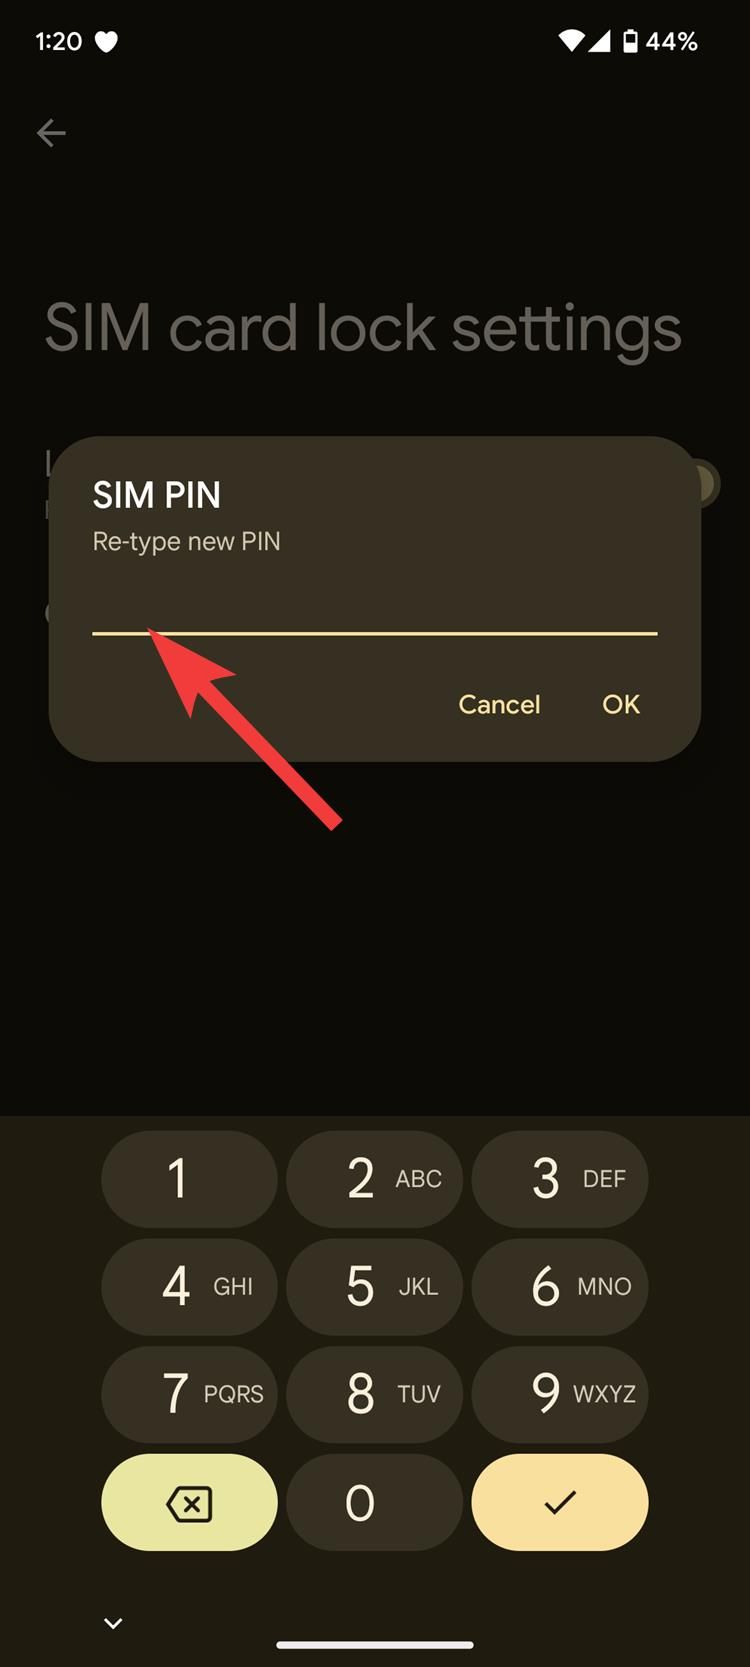 A caixa de diálogo PIN do SIM solicitando que você insira seu novo PIN do SIM em um smartphone Pixel com uma seta vermelha apontando para a linha de entrada